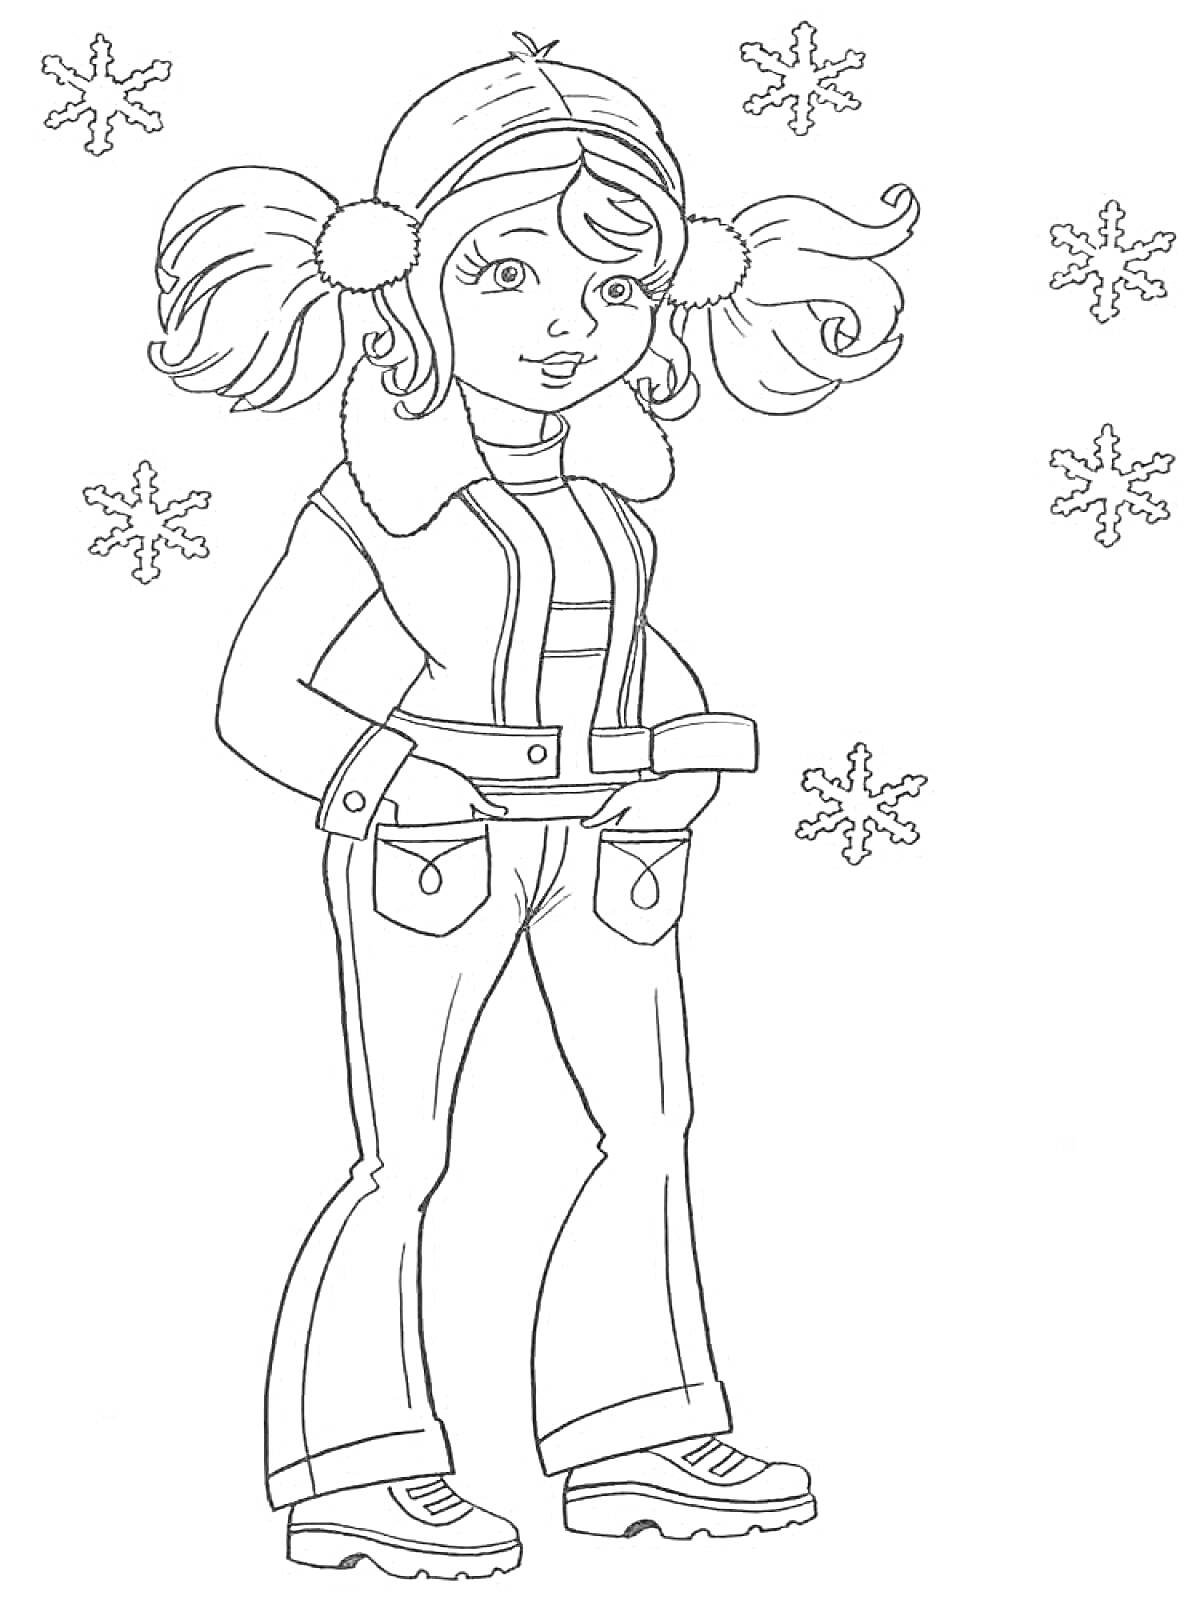 Девочка в зимней одежде с пятью снежинками вокруг